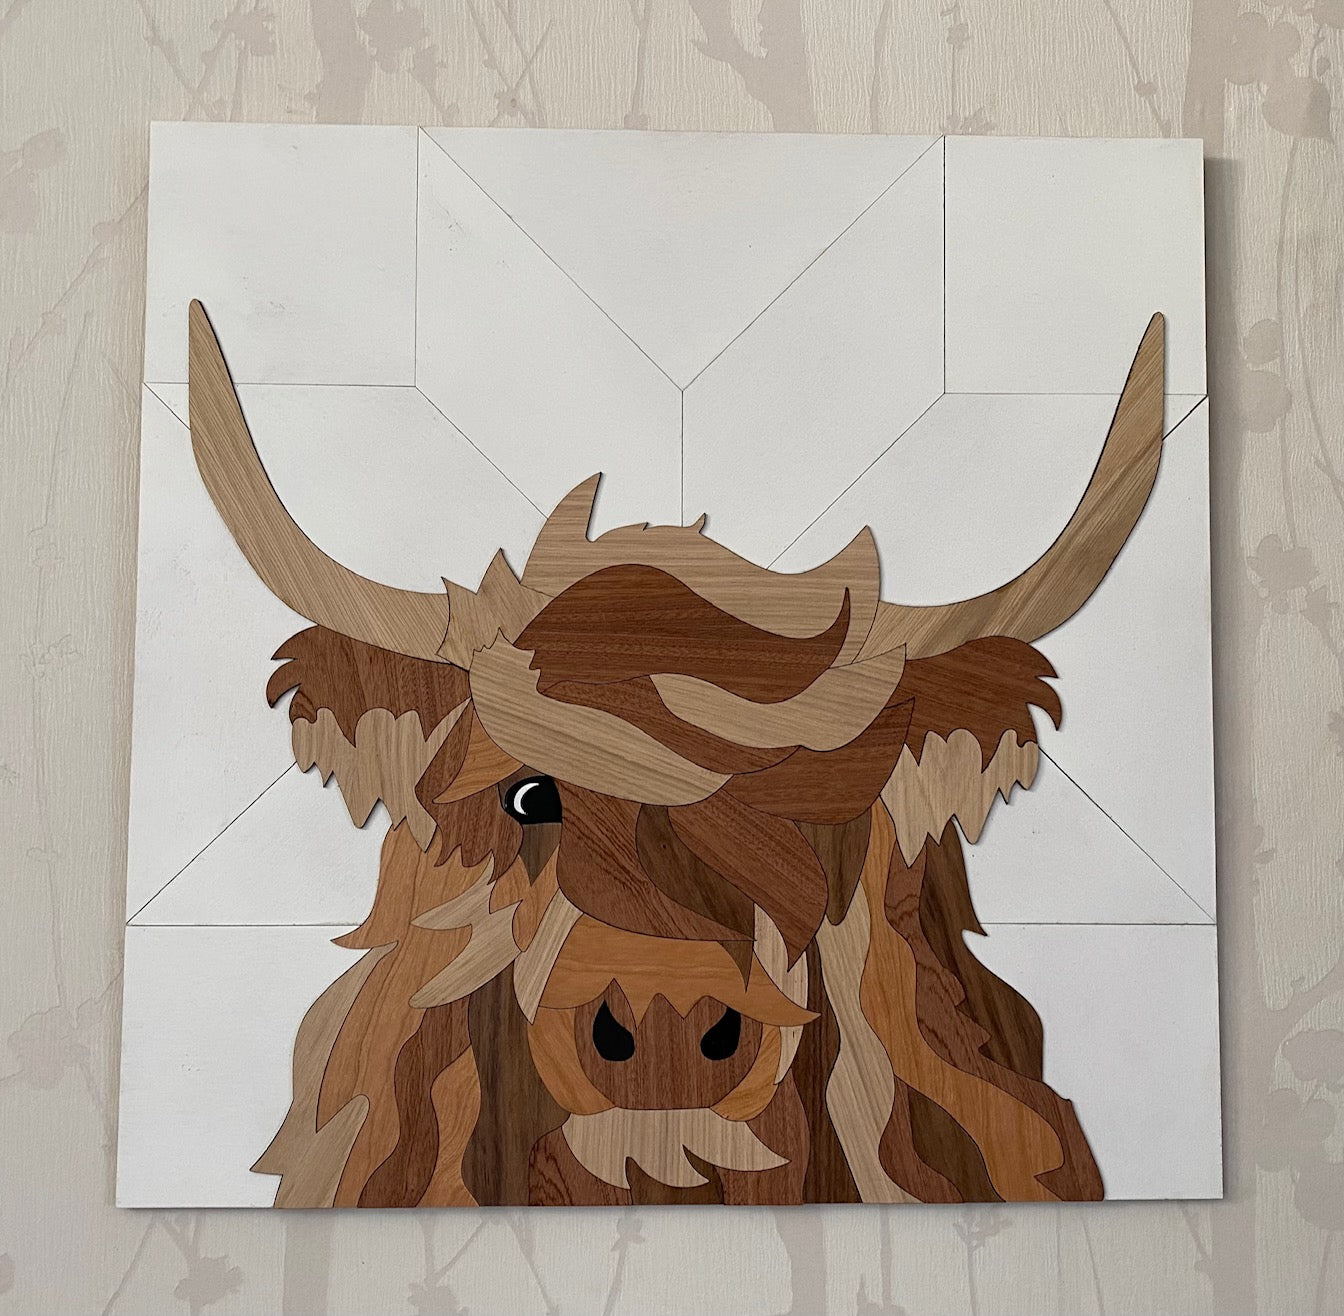 Inlay Highland Cow Wall Art 24" x 24"